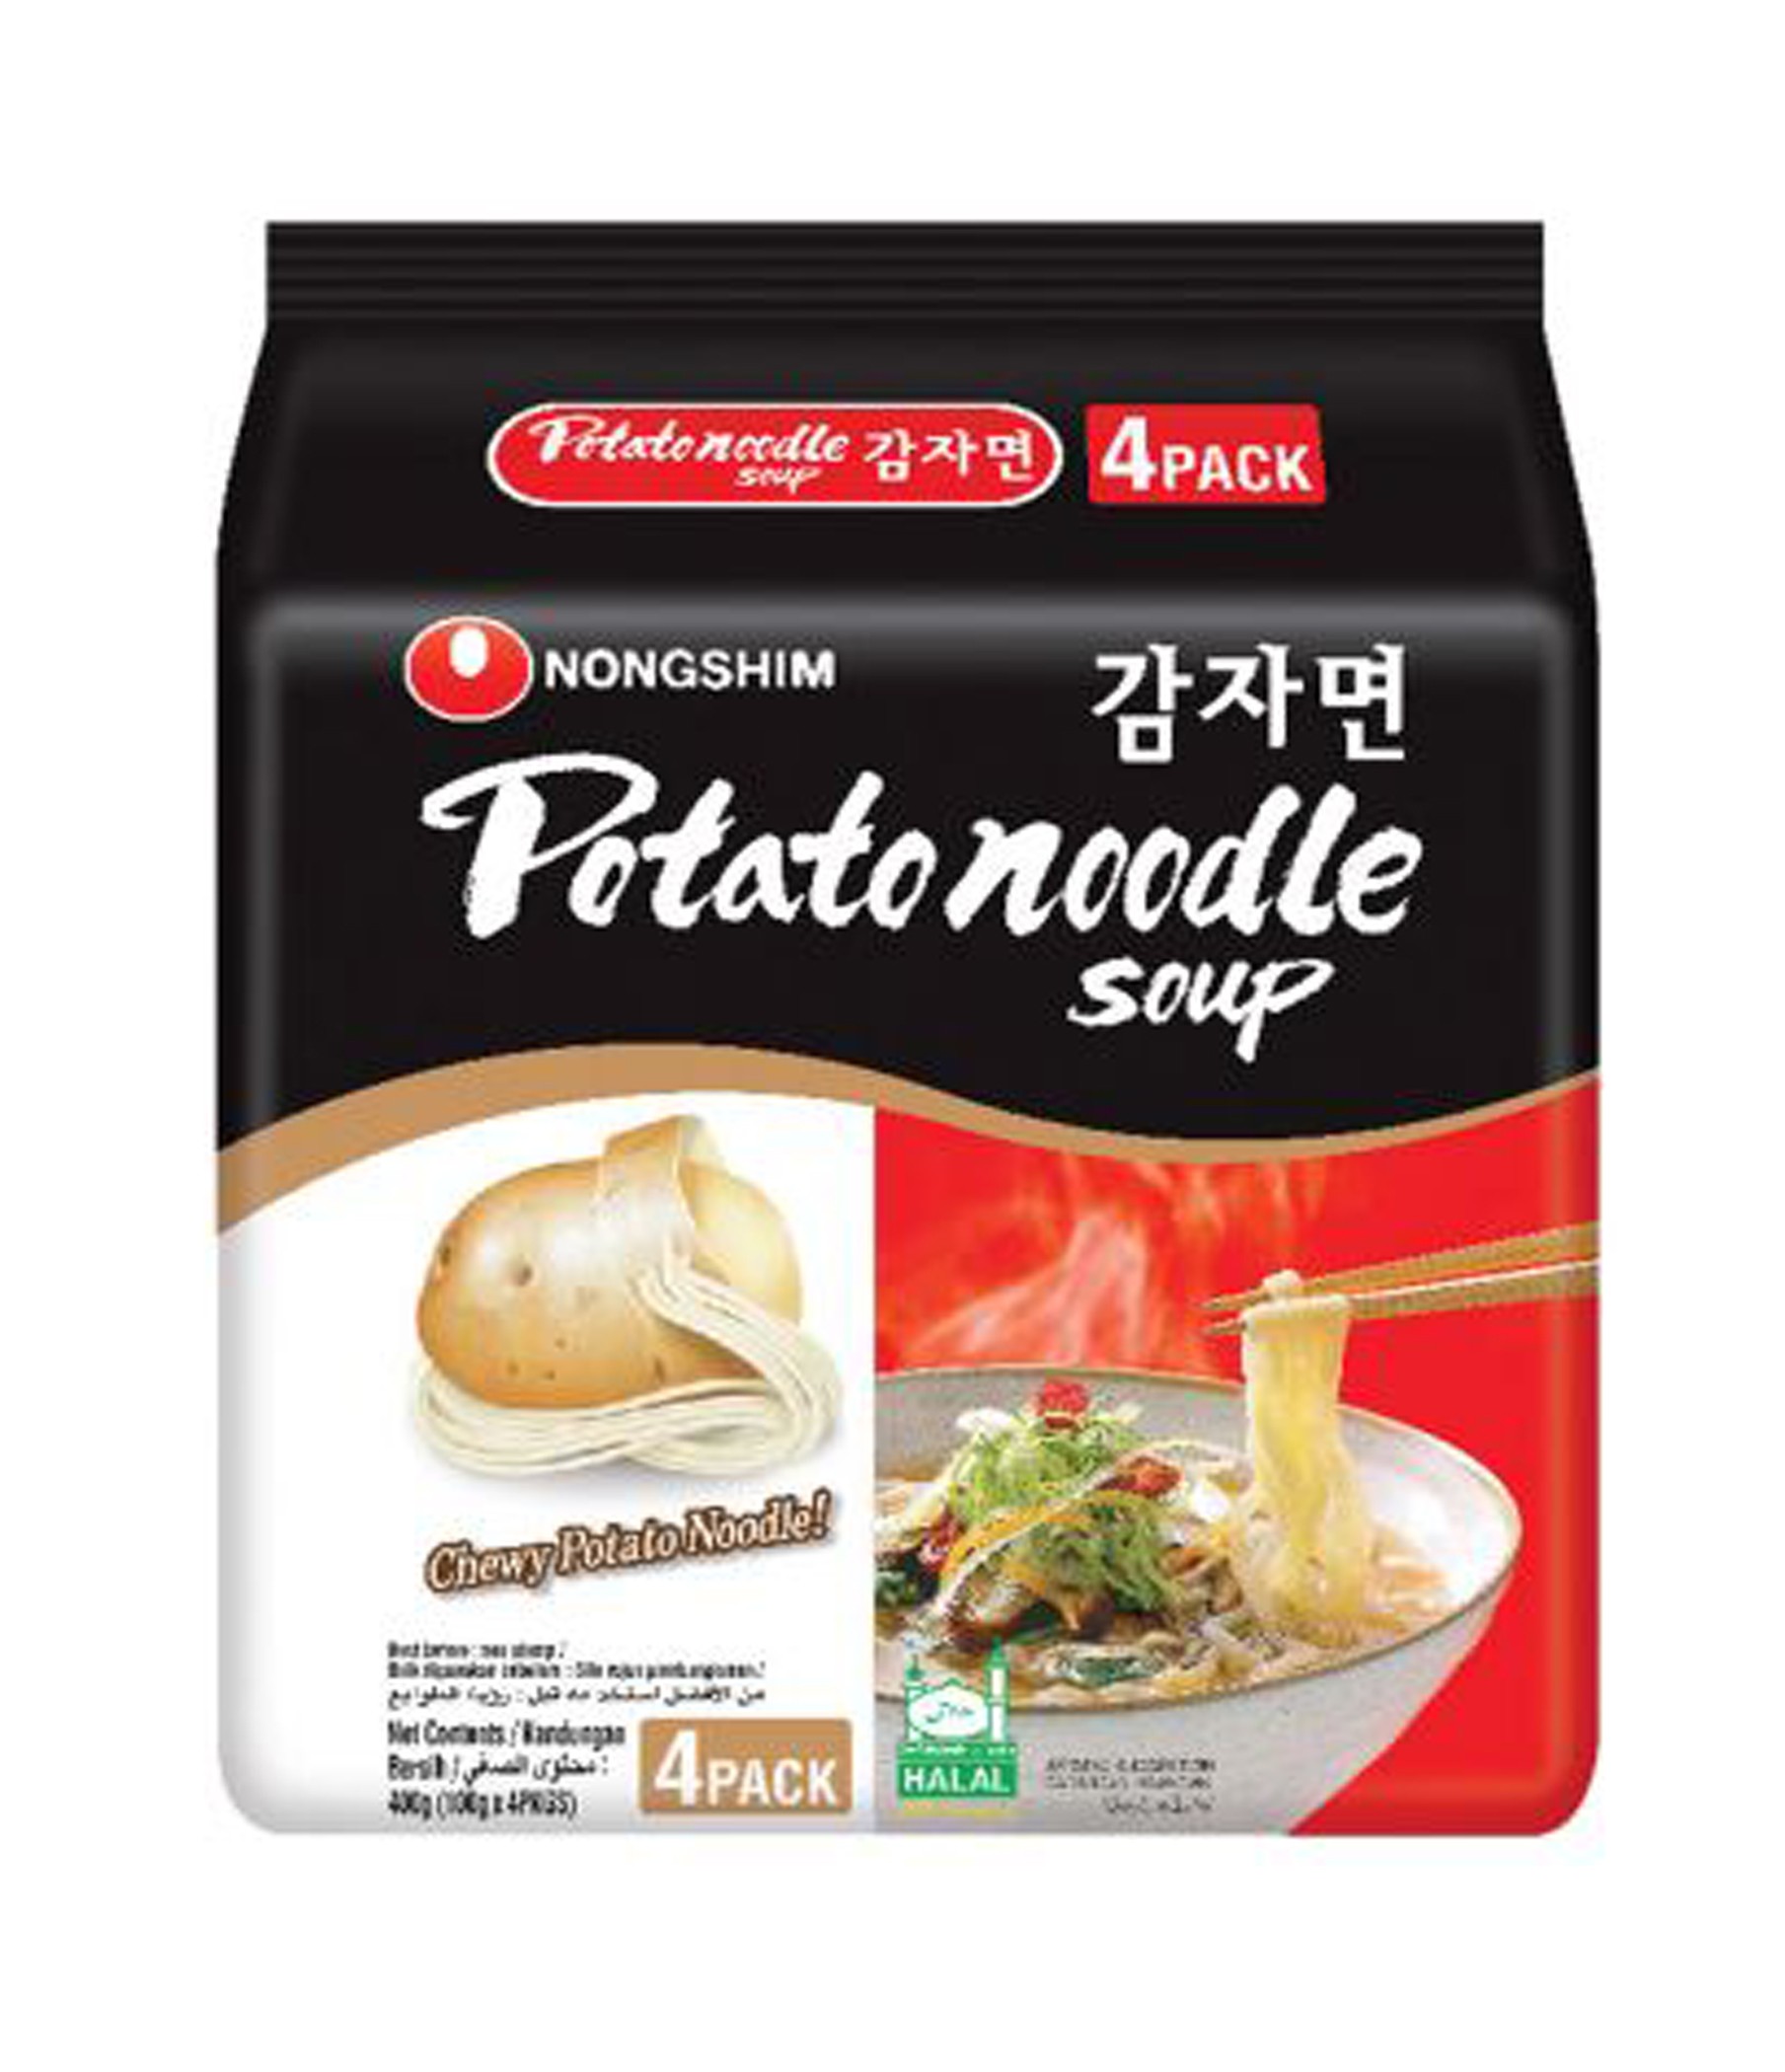 nongshim-potato-noodle-soup